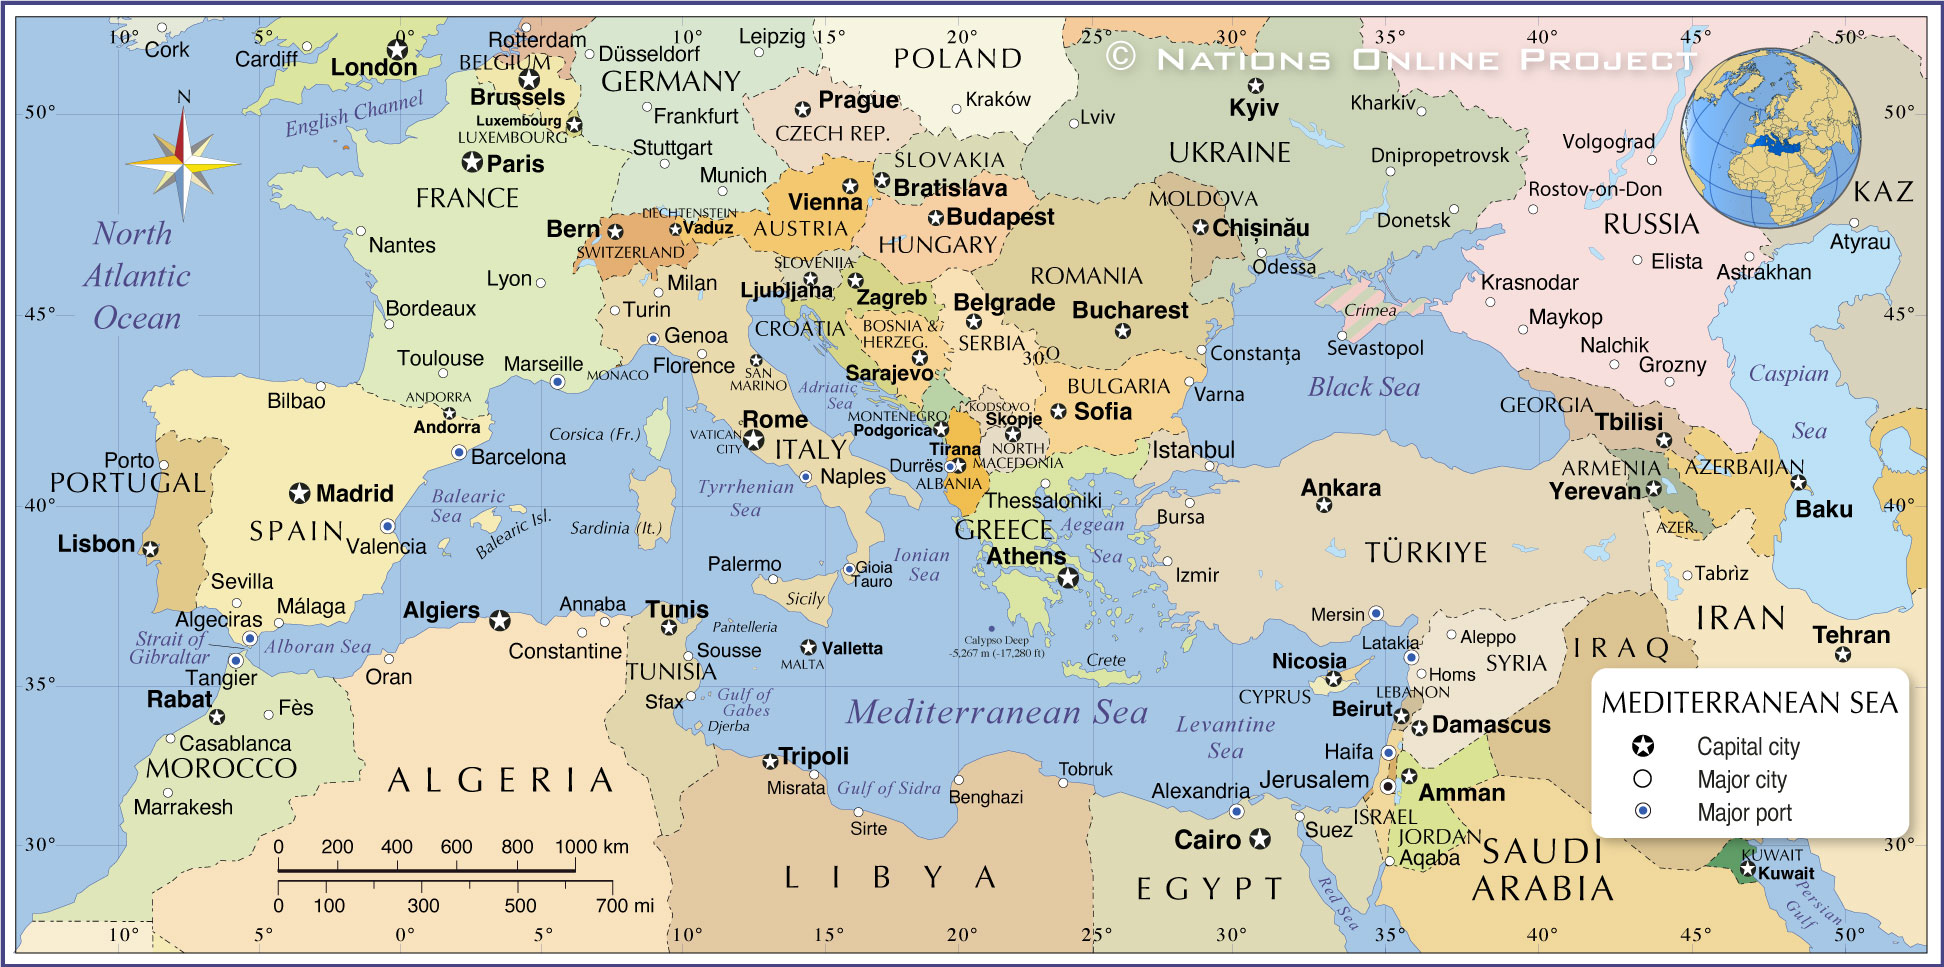 Mediterranean Region Map